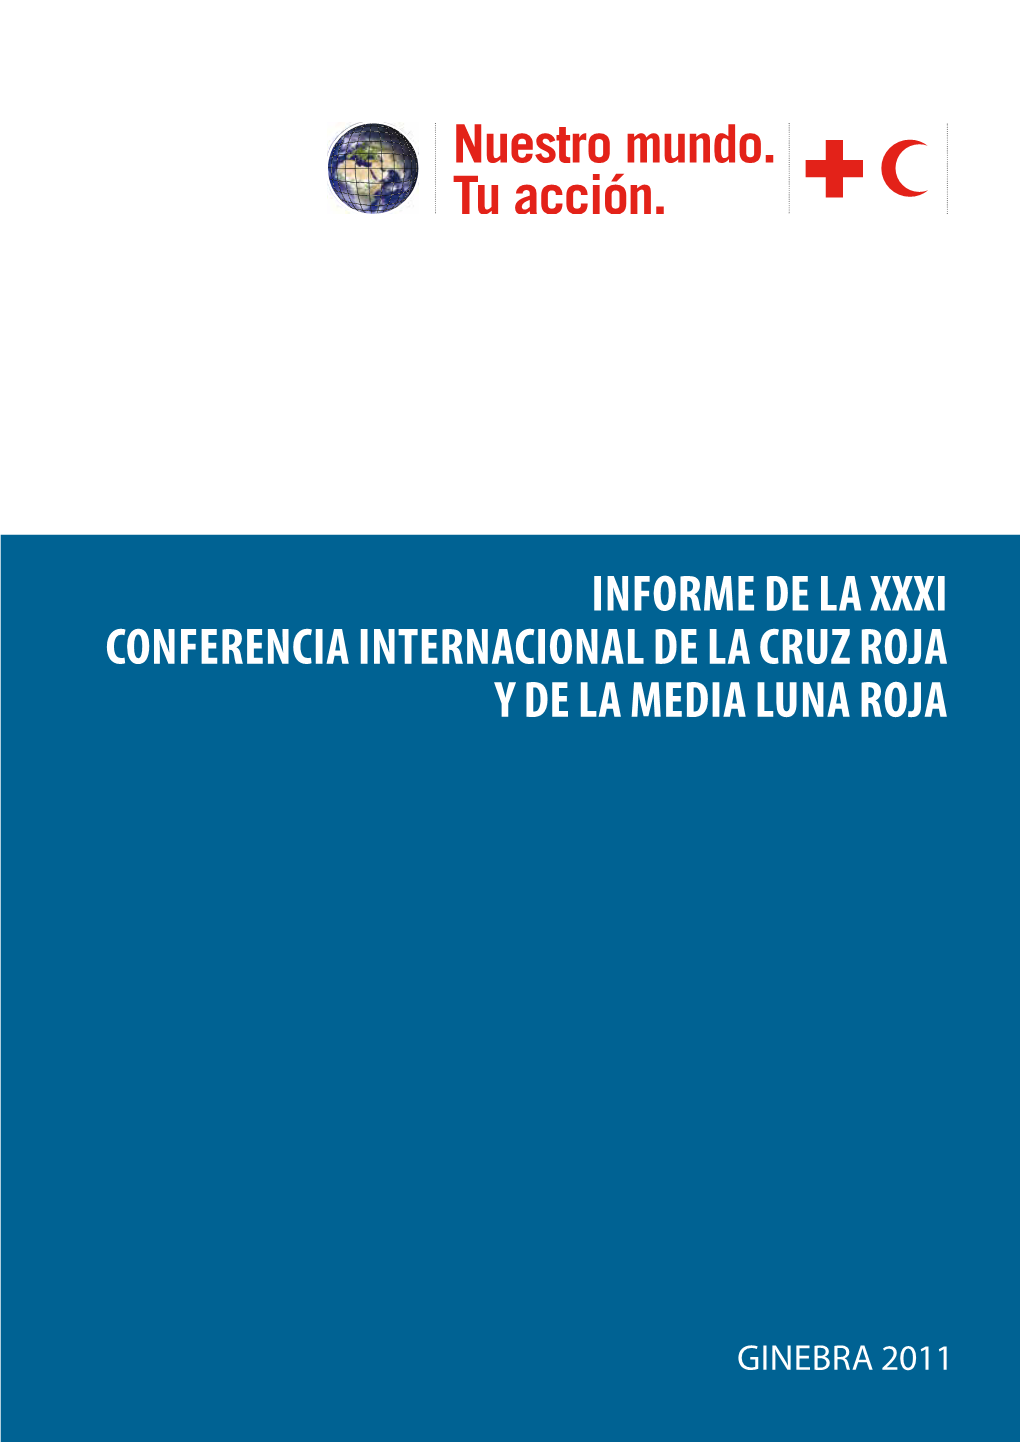 INFORME DE LA Xxxi CONFERENCIA INTERNACIONAL DE LA CRUZ ROJA Y DE LA MEDIA LUNA ROJA